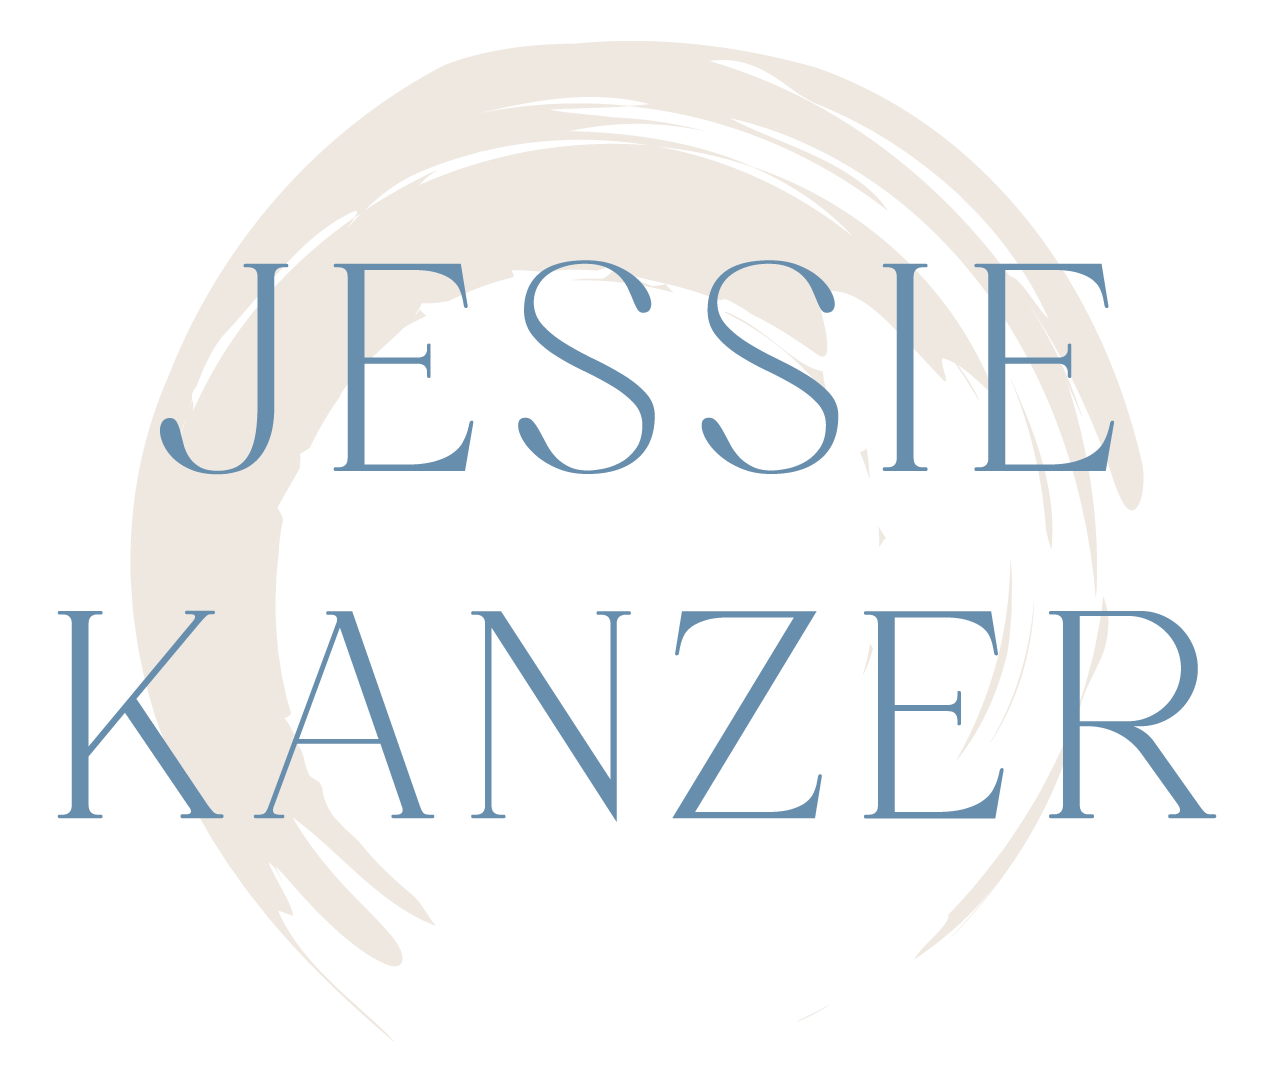 Jessie Asya Kanzer